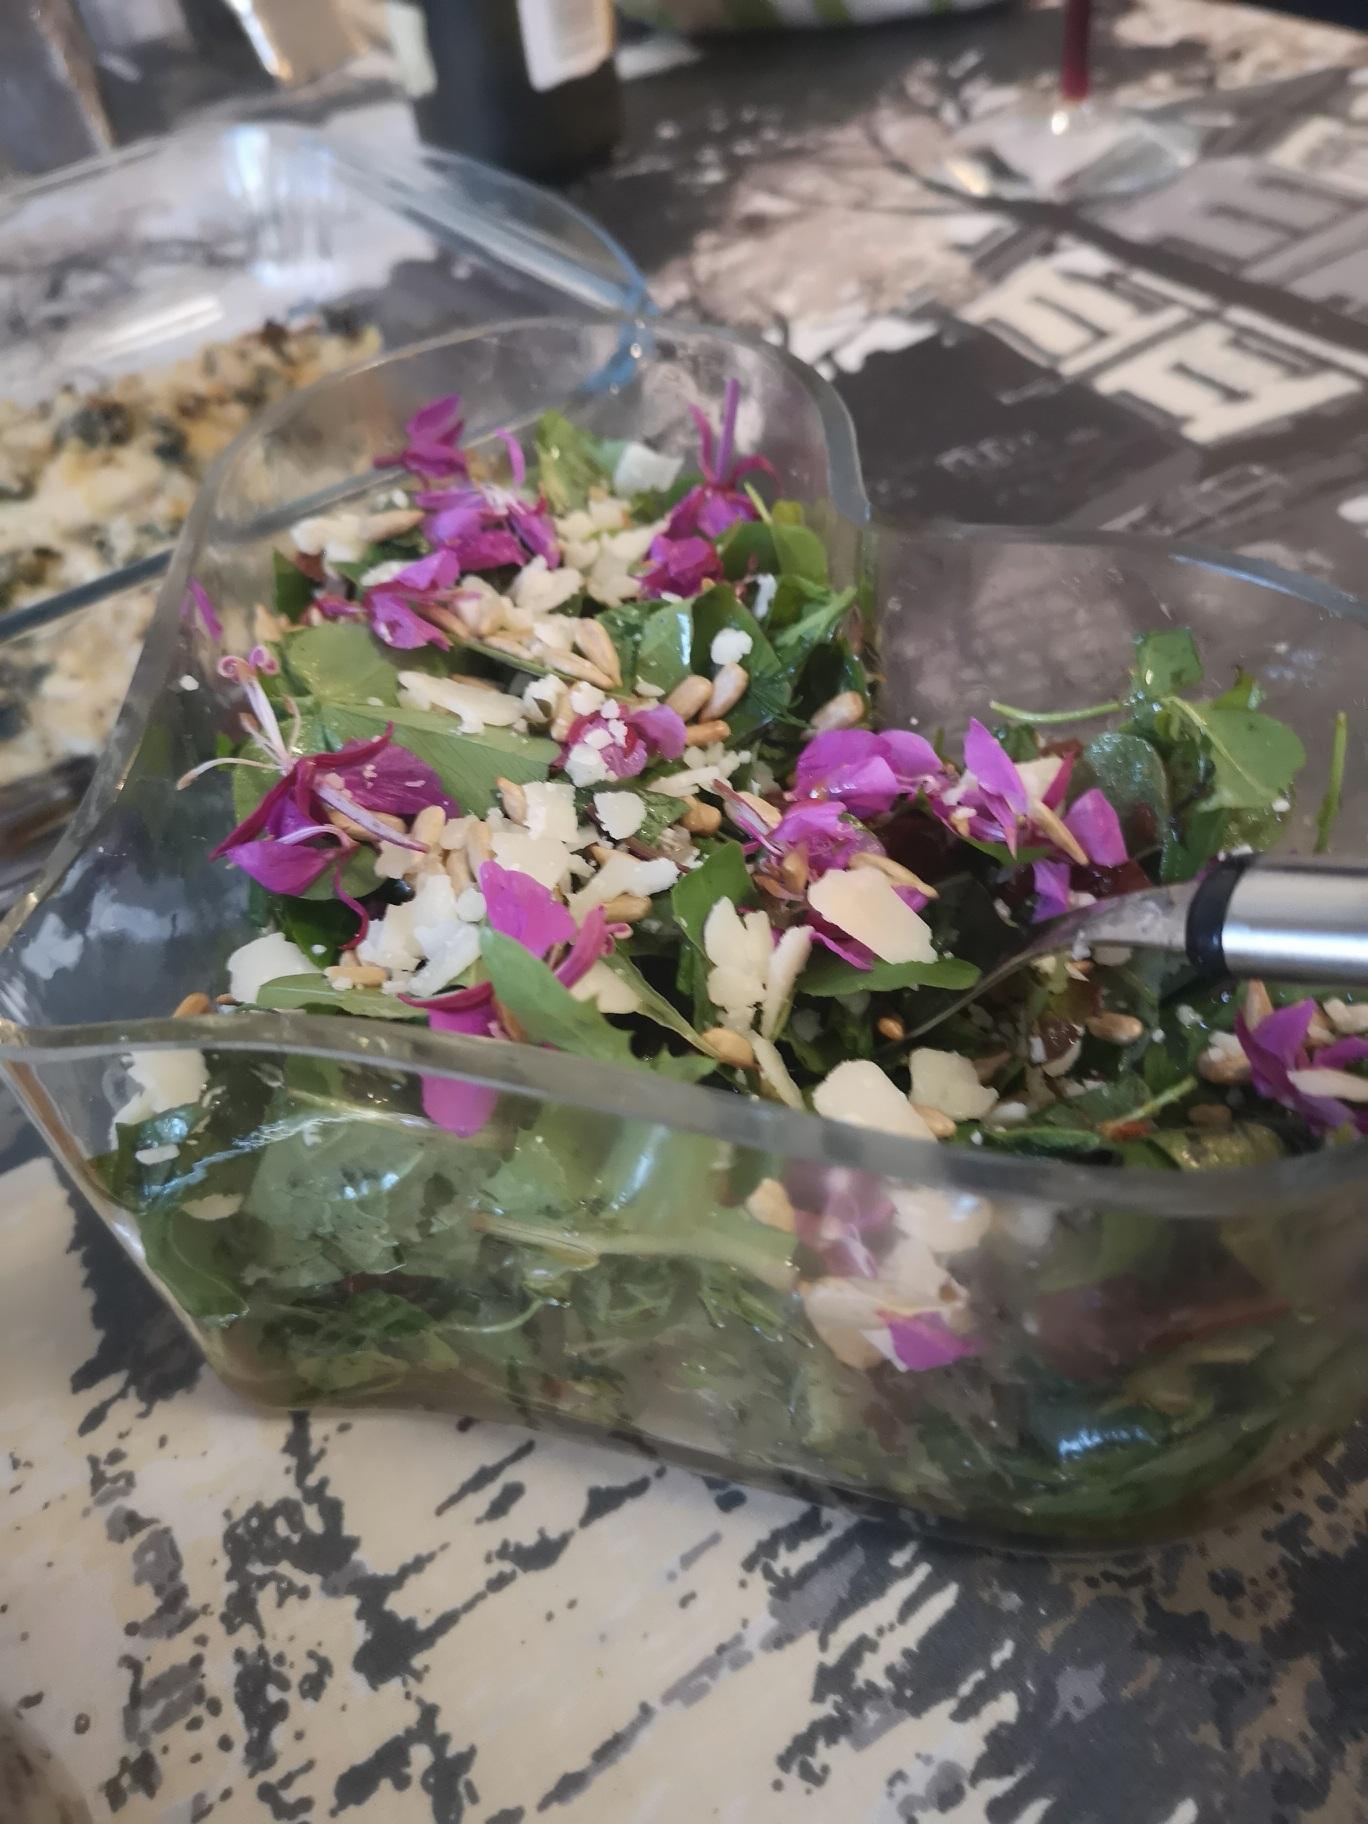 Maitohorsman kukat antavat kauniin värin salaatille.